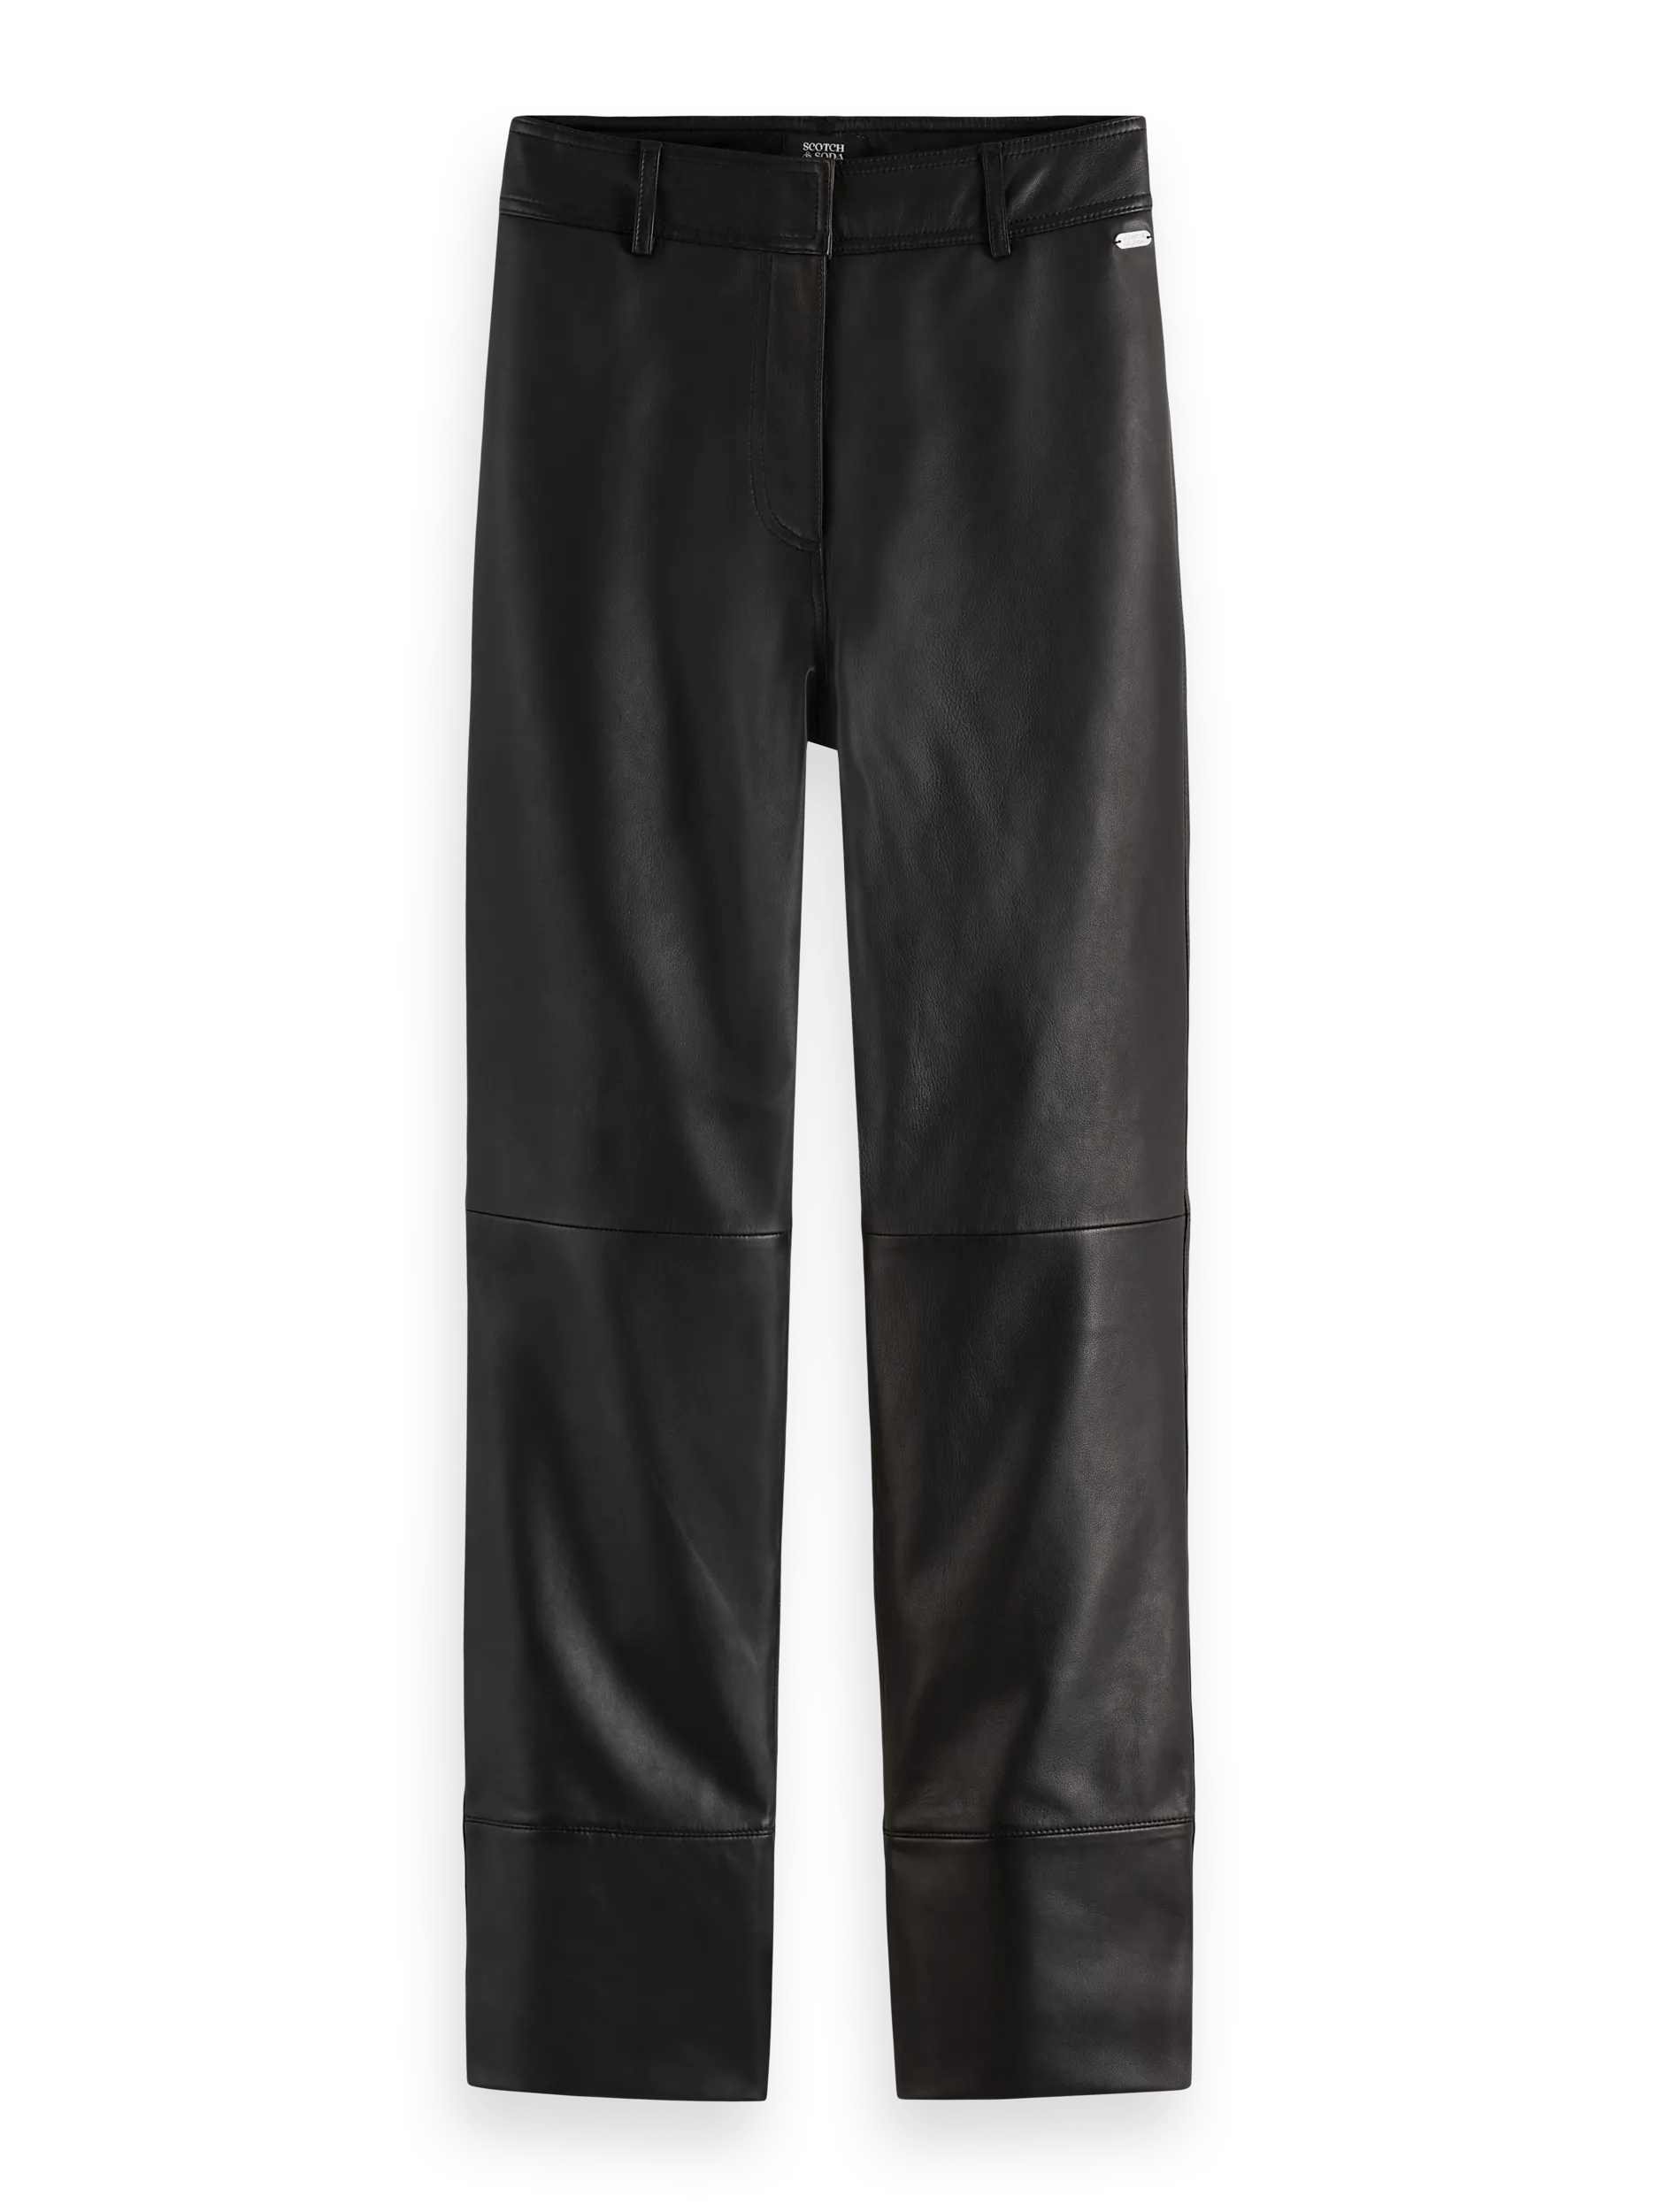 Scotch & Soda Leren broek met rechte pijpen, hoge taille FNT